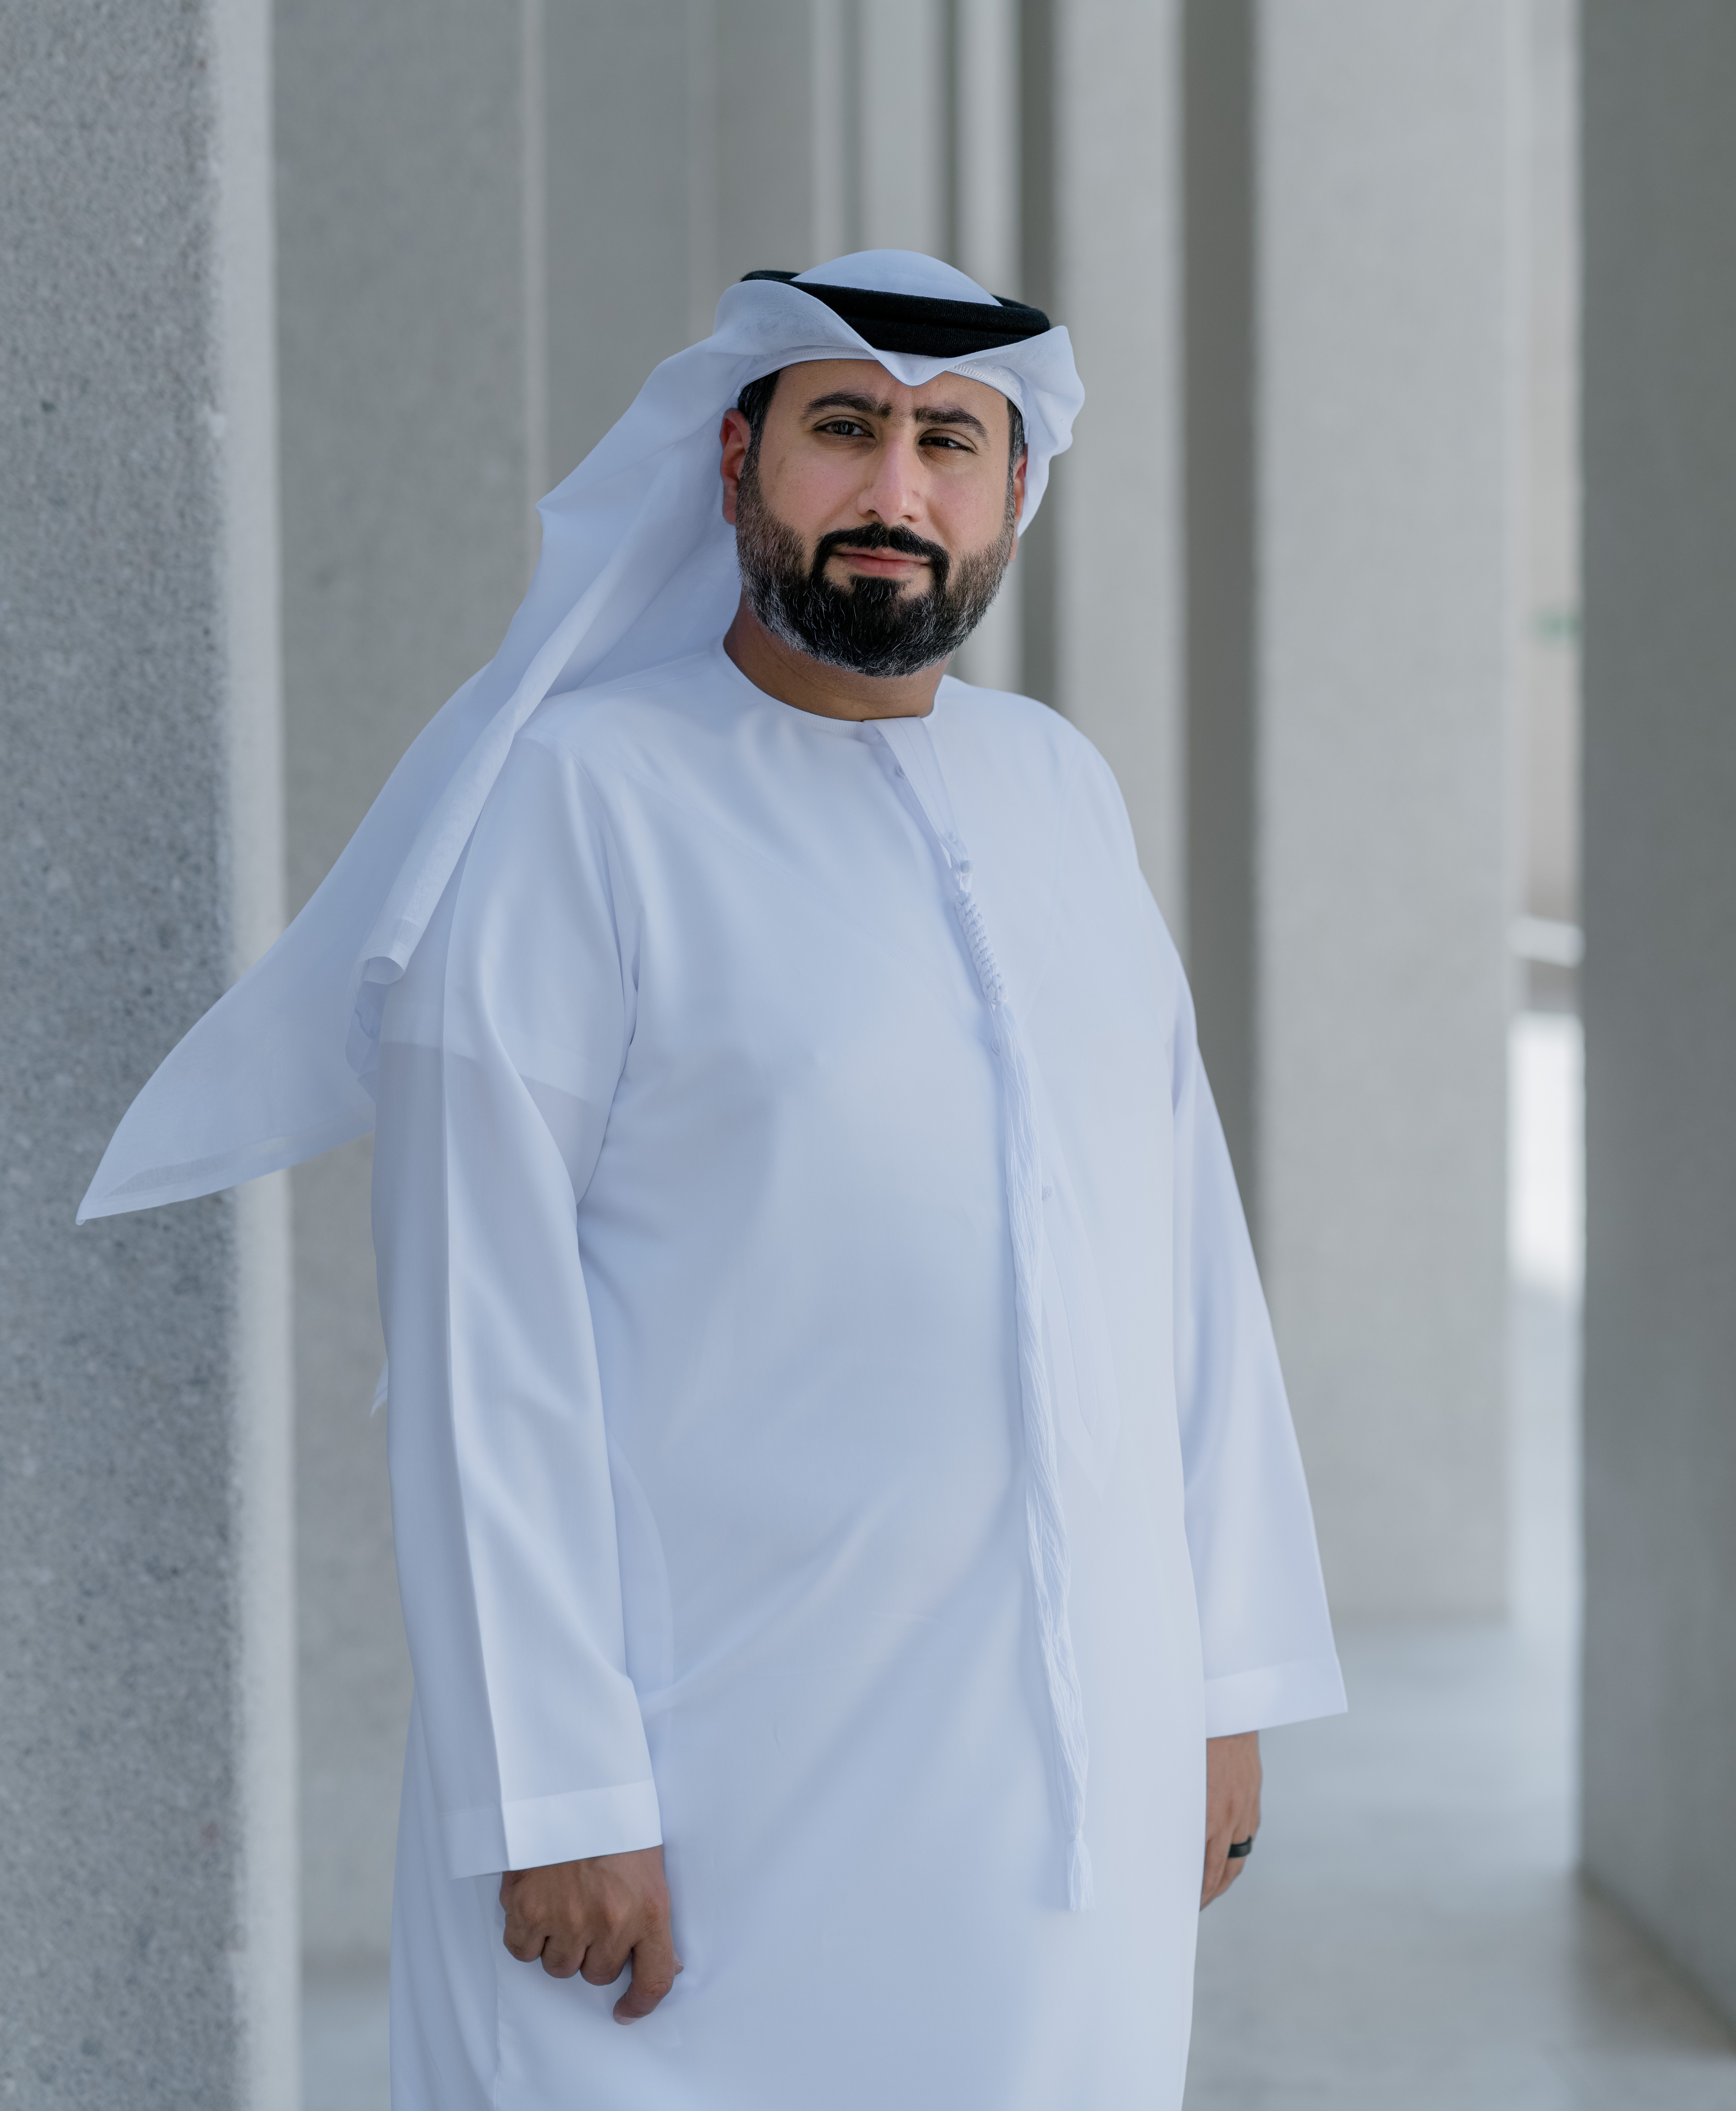 Abdulla Al Shehhi